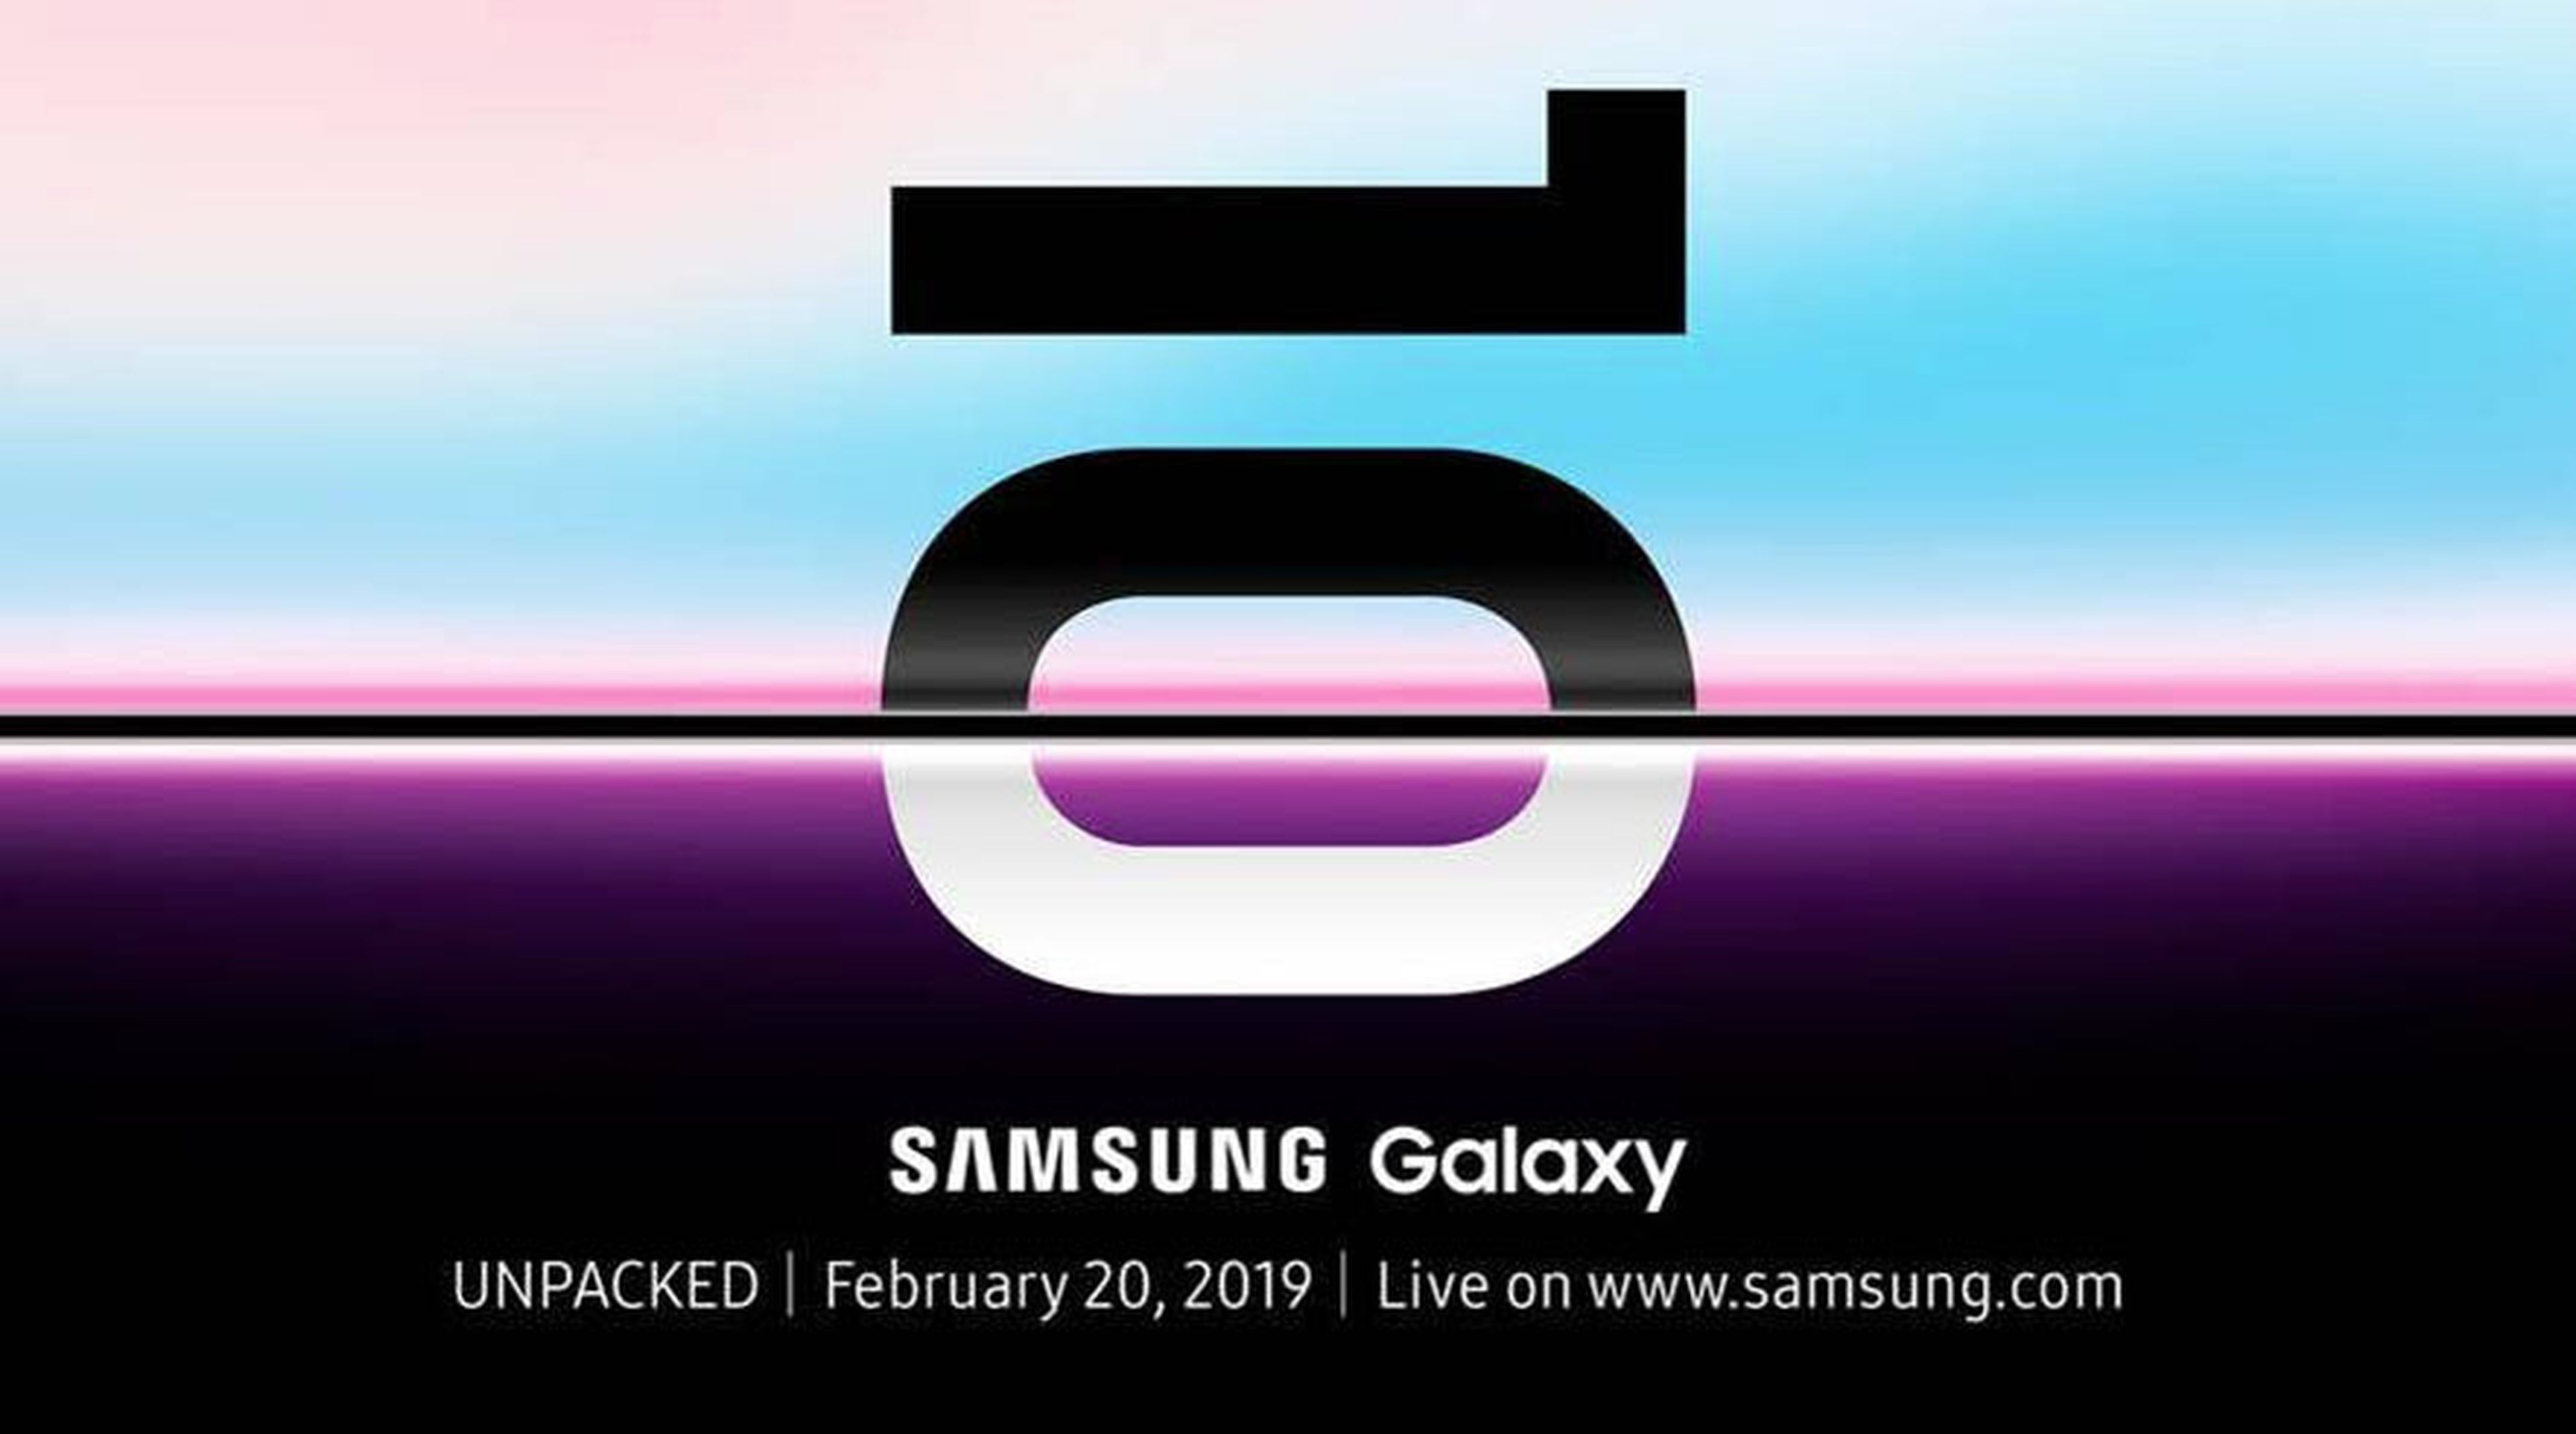 Invitación Unpacked Samsung Galaxy S10